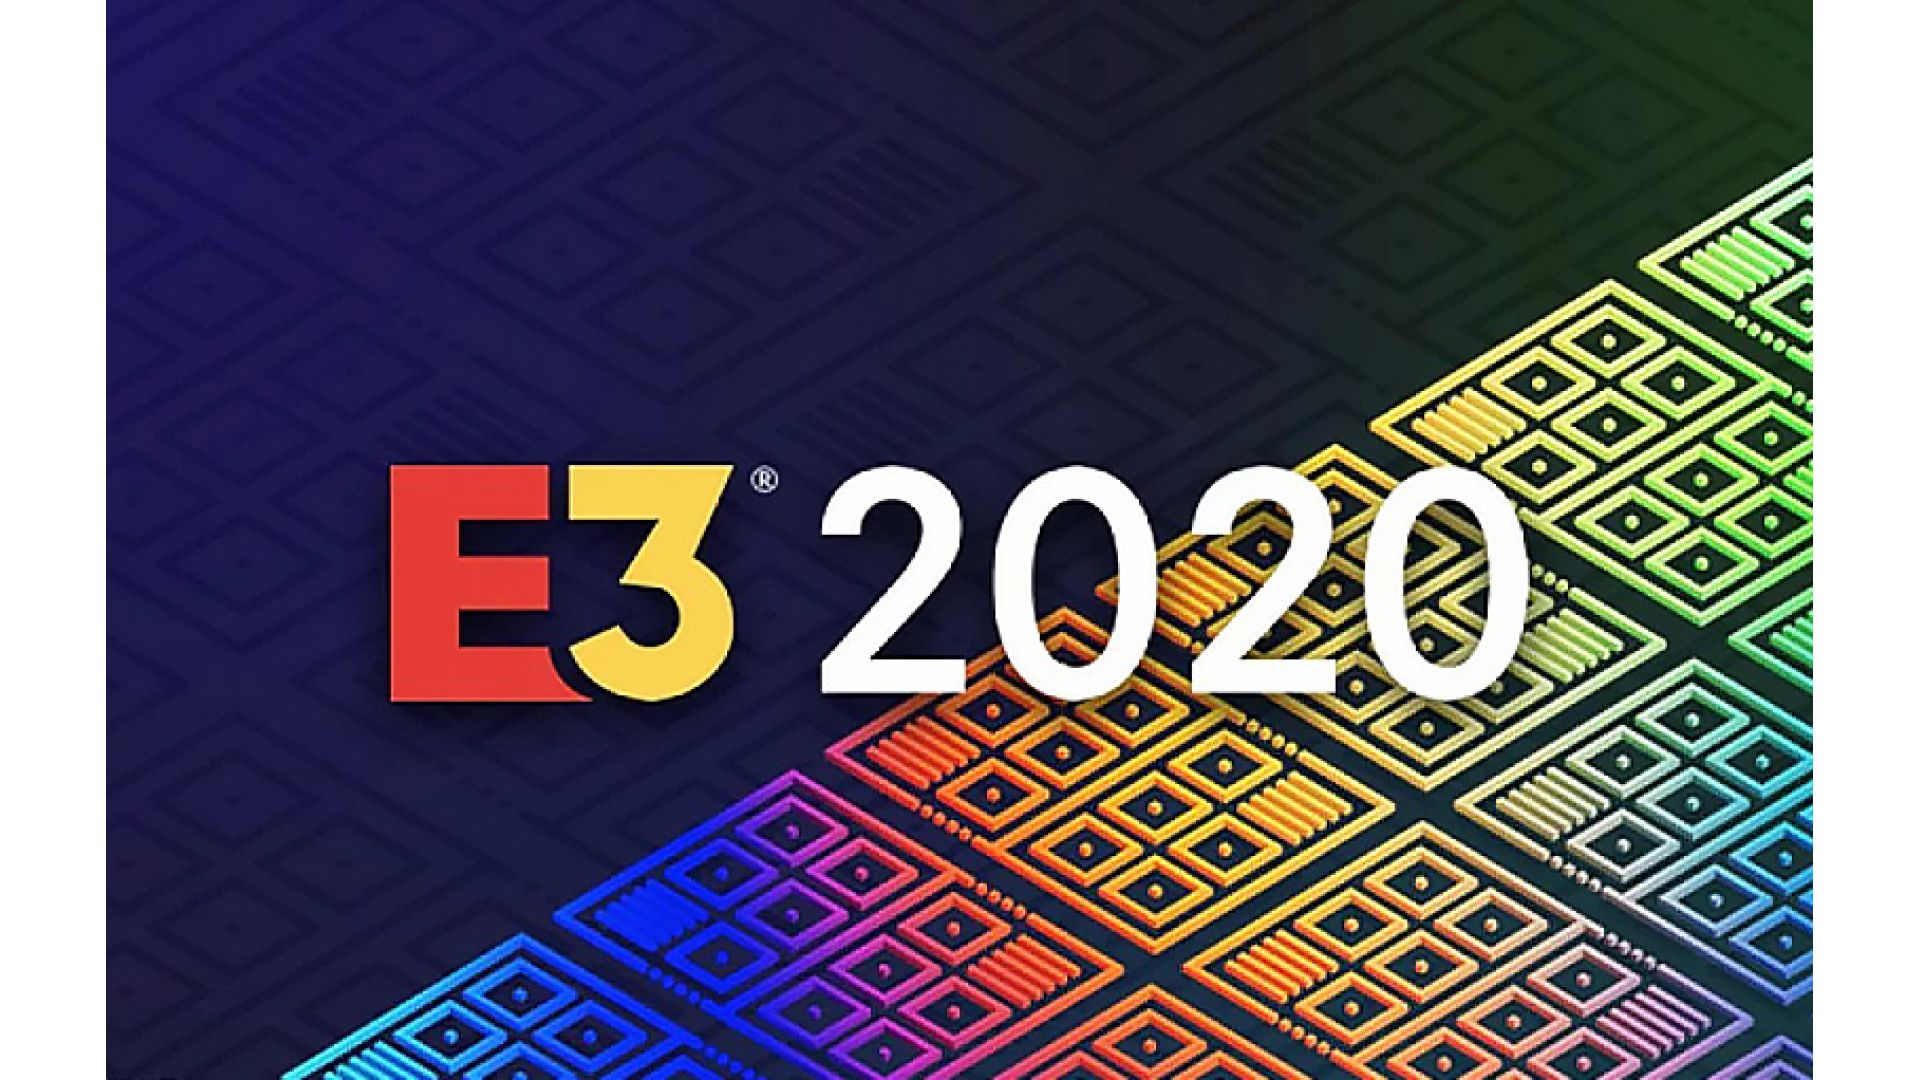 مایکروسافت با تمام قوا در E3 2020 شرکت خواهد کرد